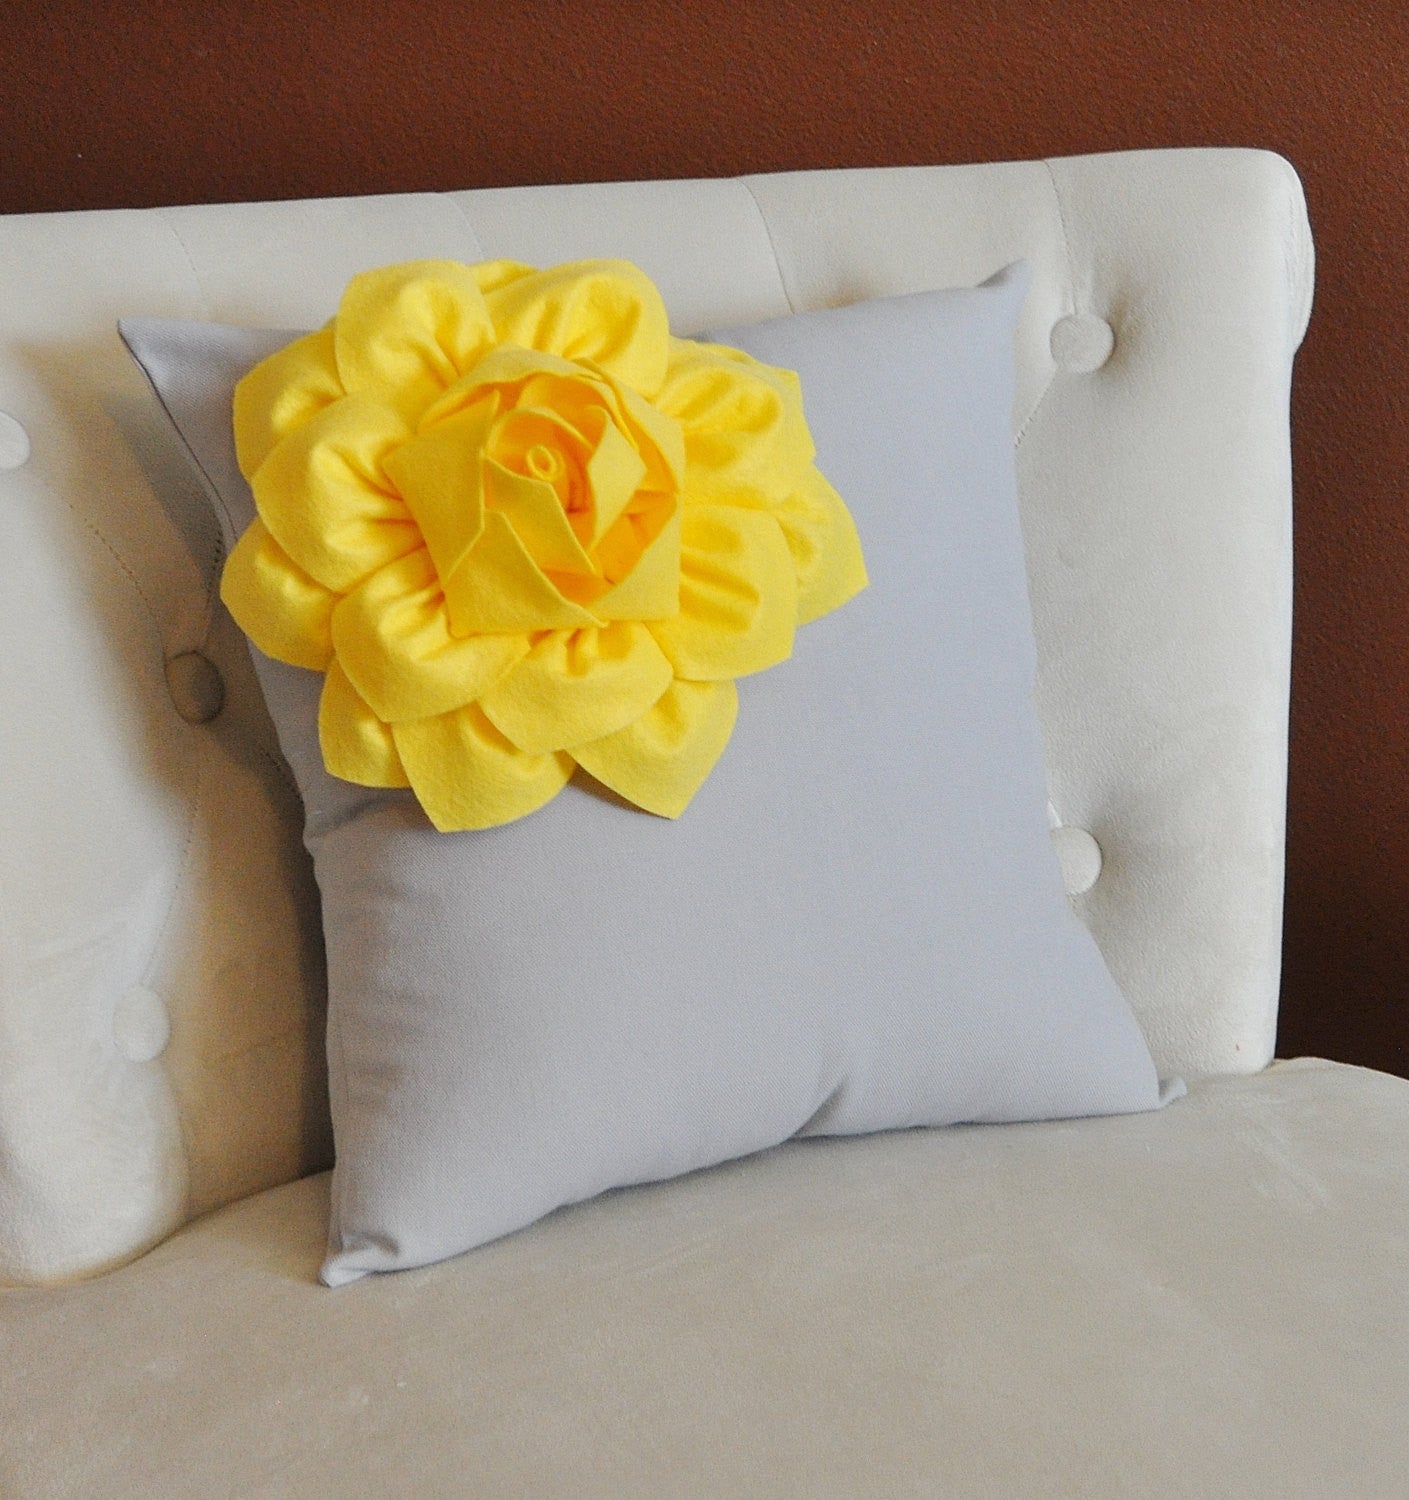 Yellow Felt Petals Pillow 18 Inch *P, PL-7926